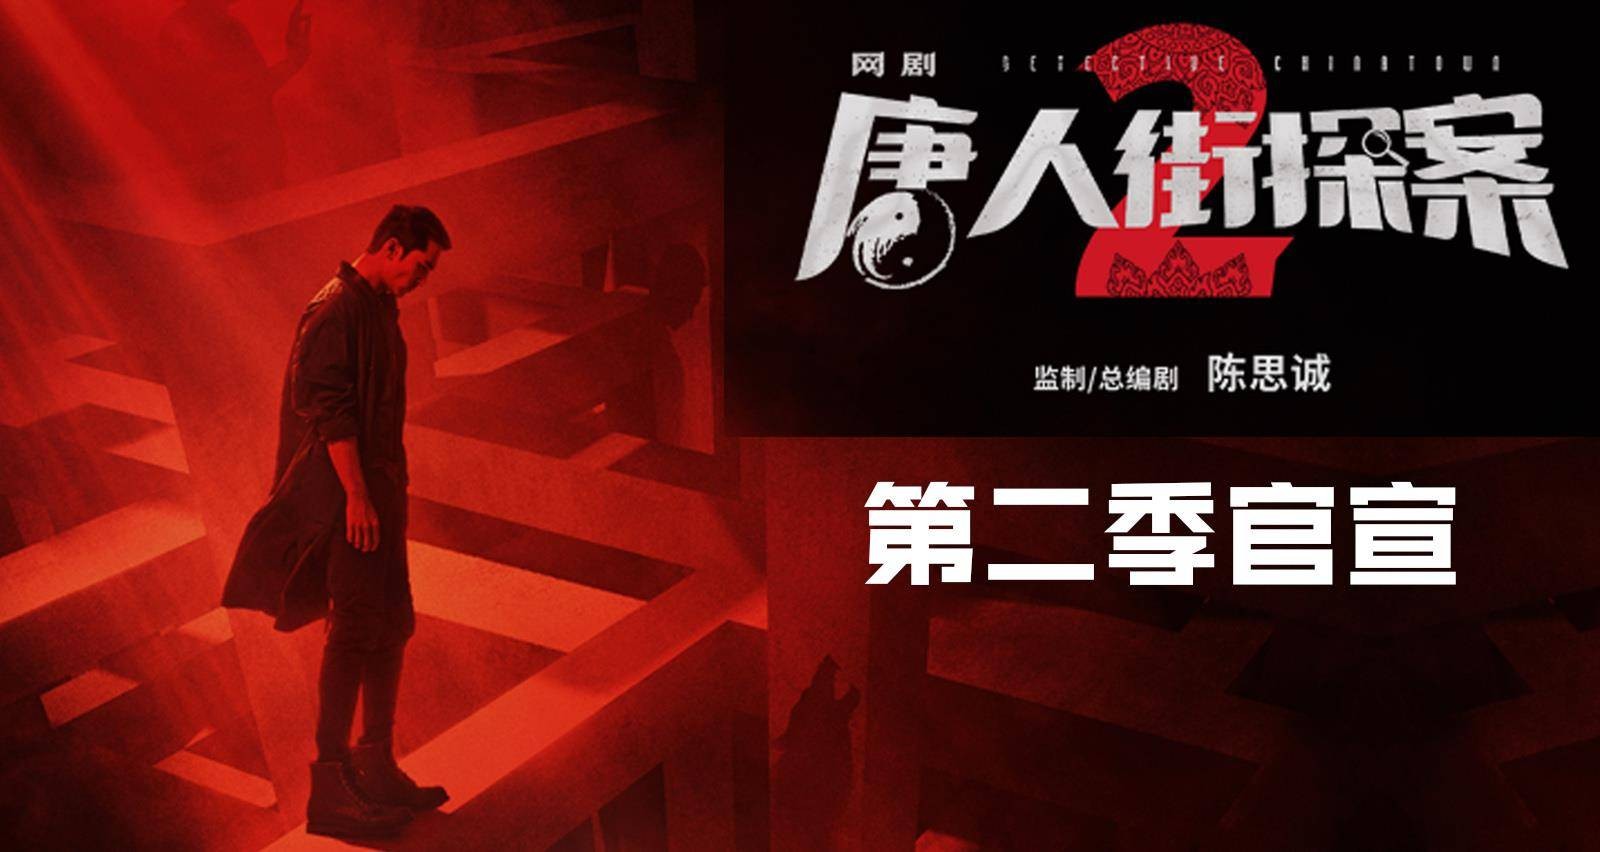 Thám tử phố tàu phần 2 - Detective chinatown season 2